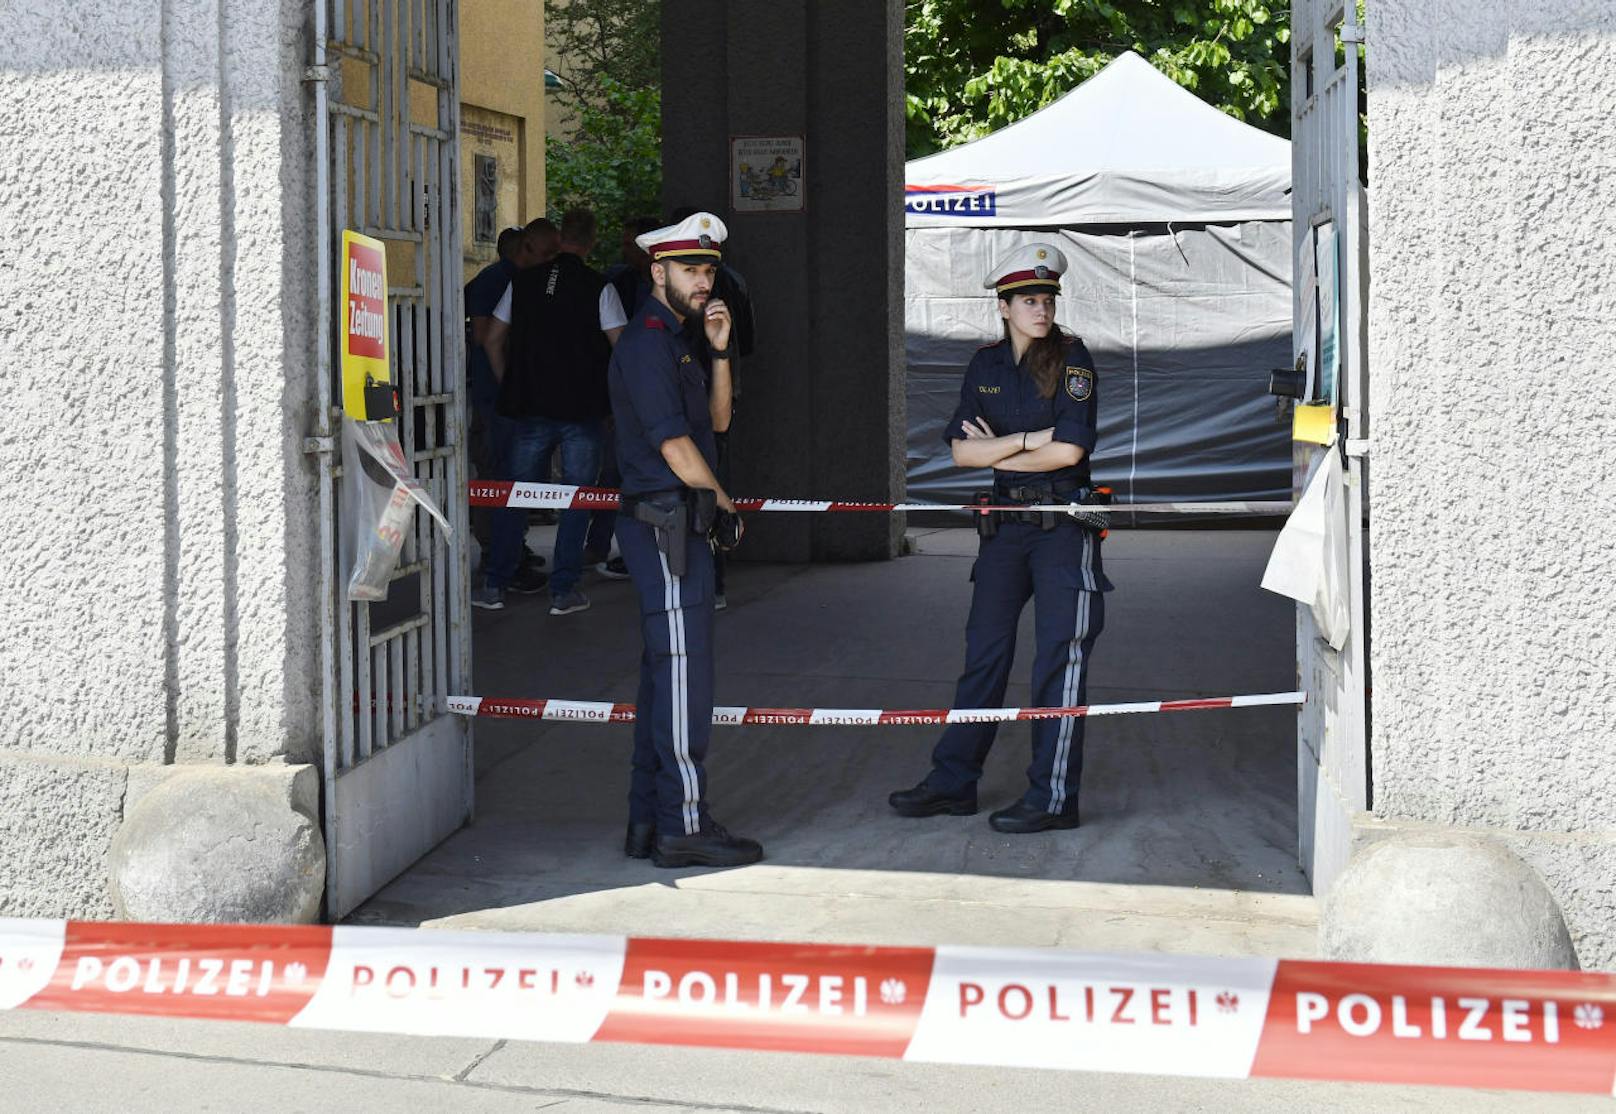 In einer Wohnhausanlage in der Heiligenstädter Straße 11-25 in Wien-Döbling ist am Samstag 12. Mai eine Leiche in einem Mistkübel entdeckt worden.